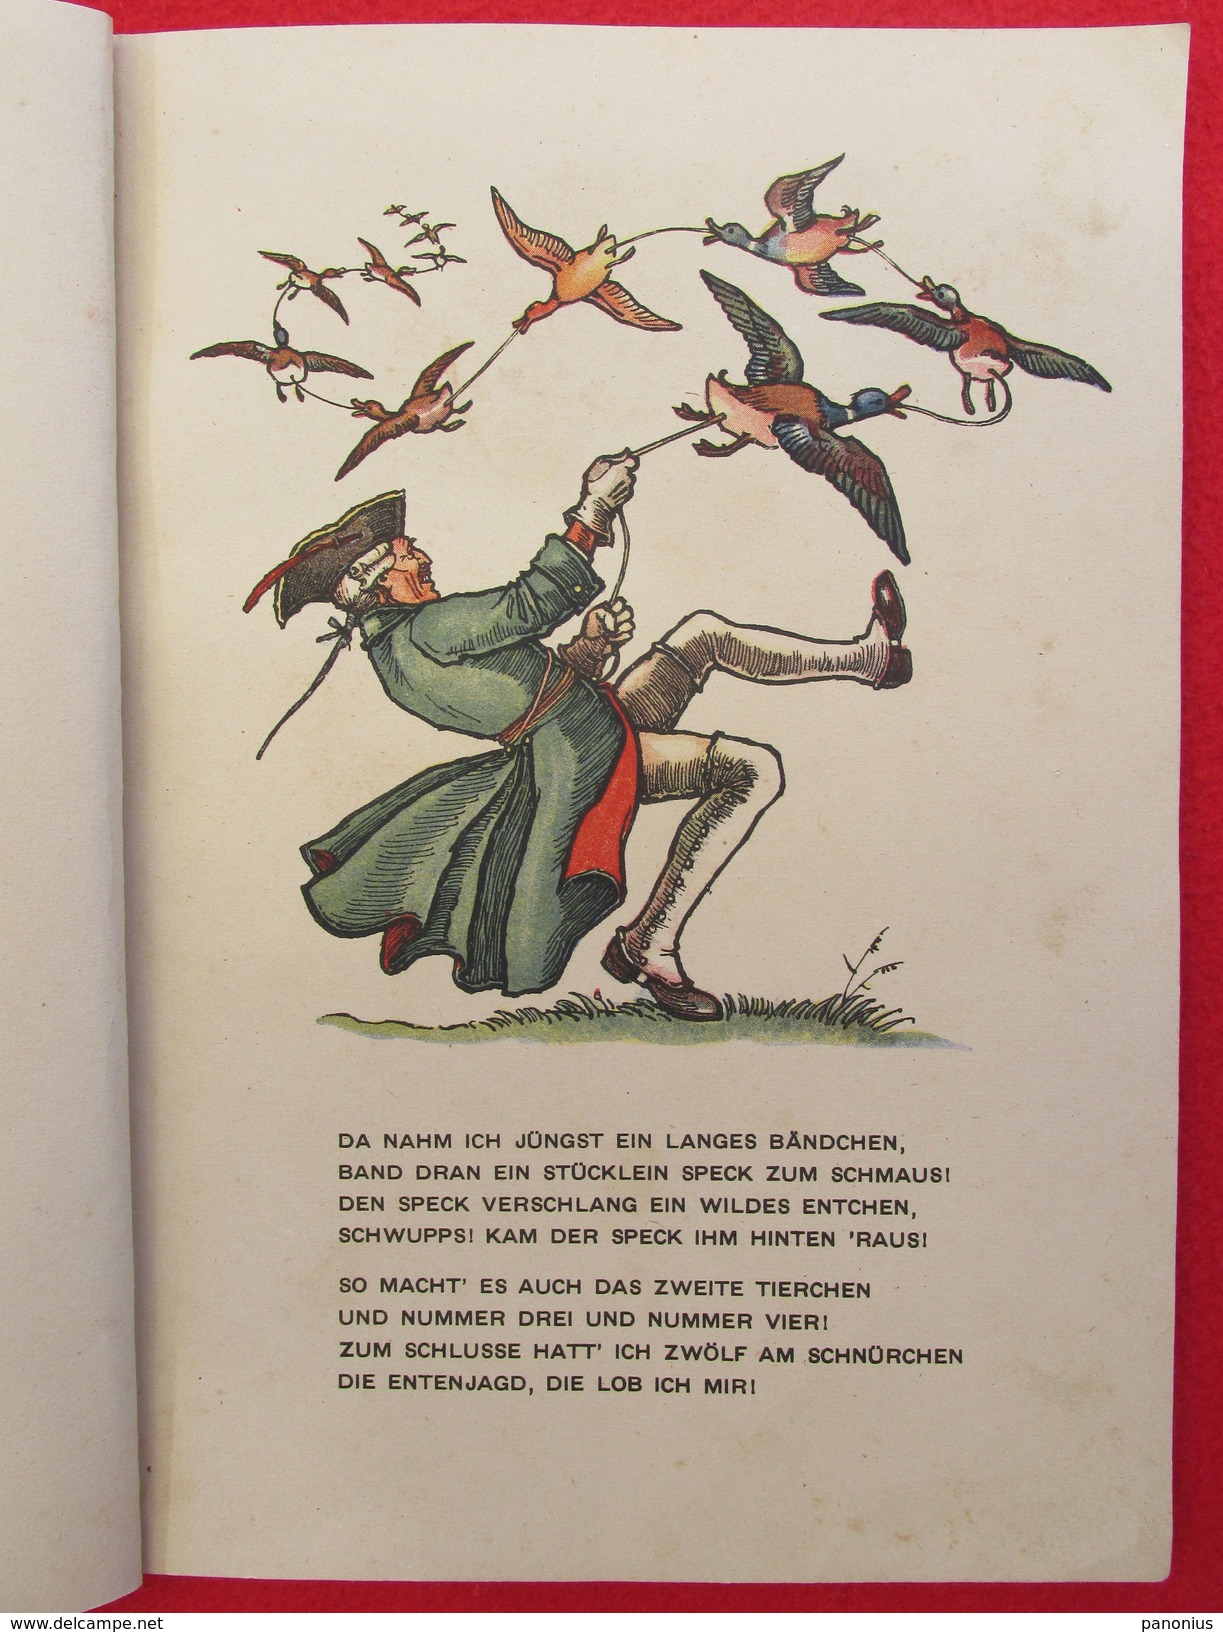 BARON VON MUNCHHAUSEN - Picture Book / Bilderbuch, Edition: Trenkler, Leipzig, Germany, Cca 1930. - Picture Book